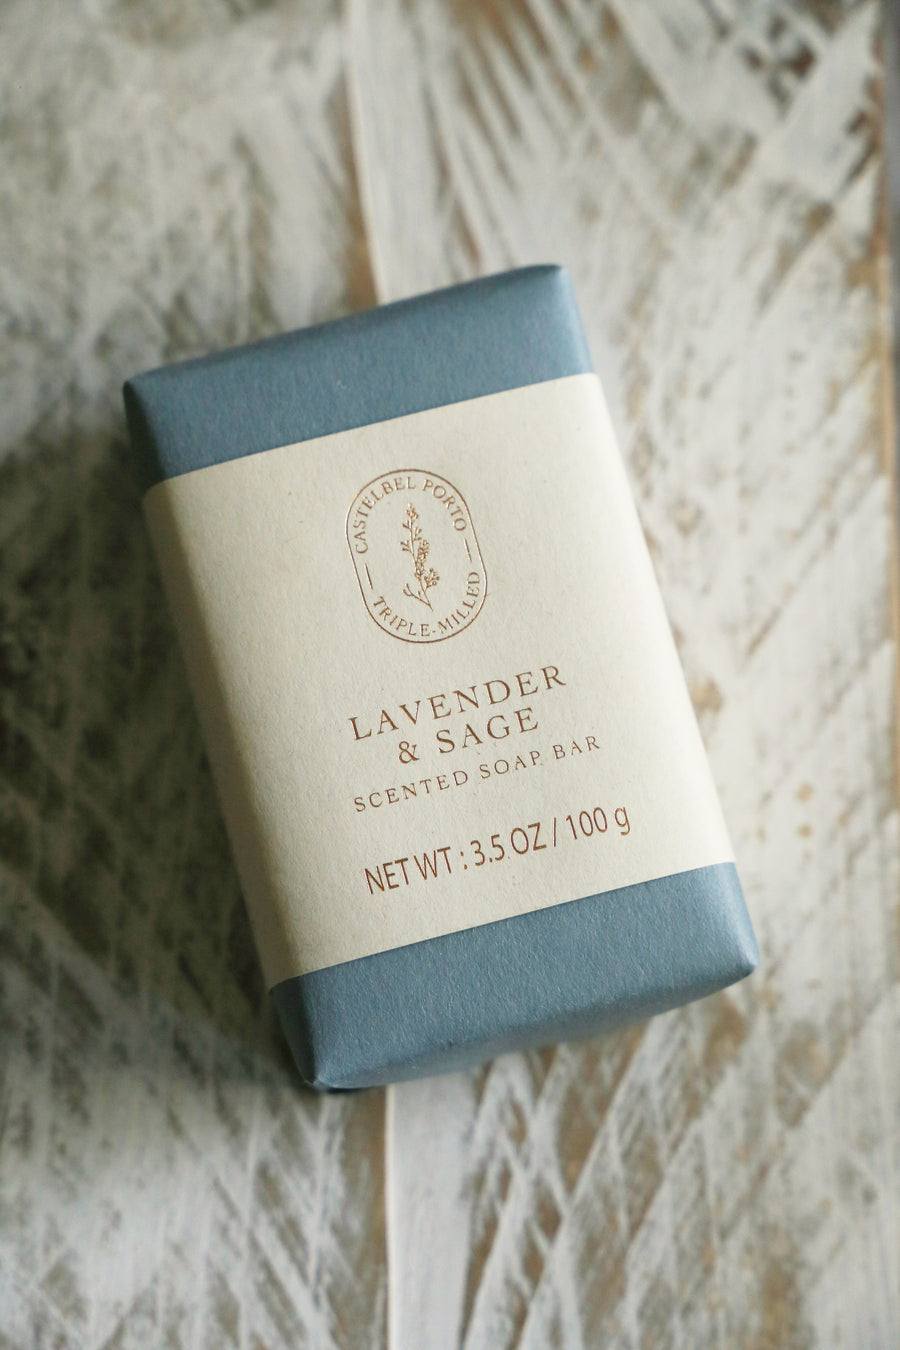 Lavender & Sage soap